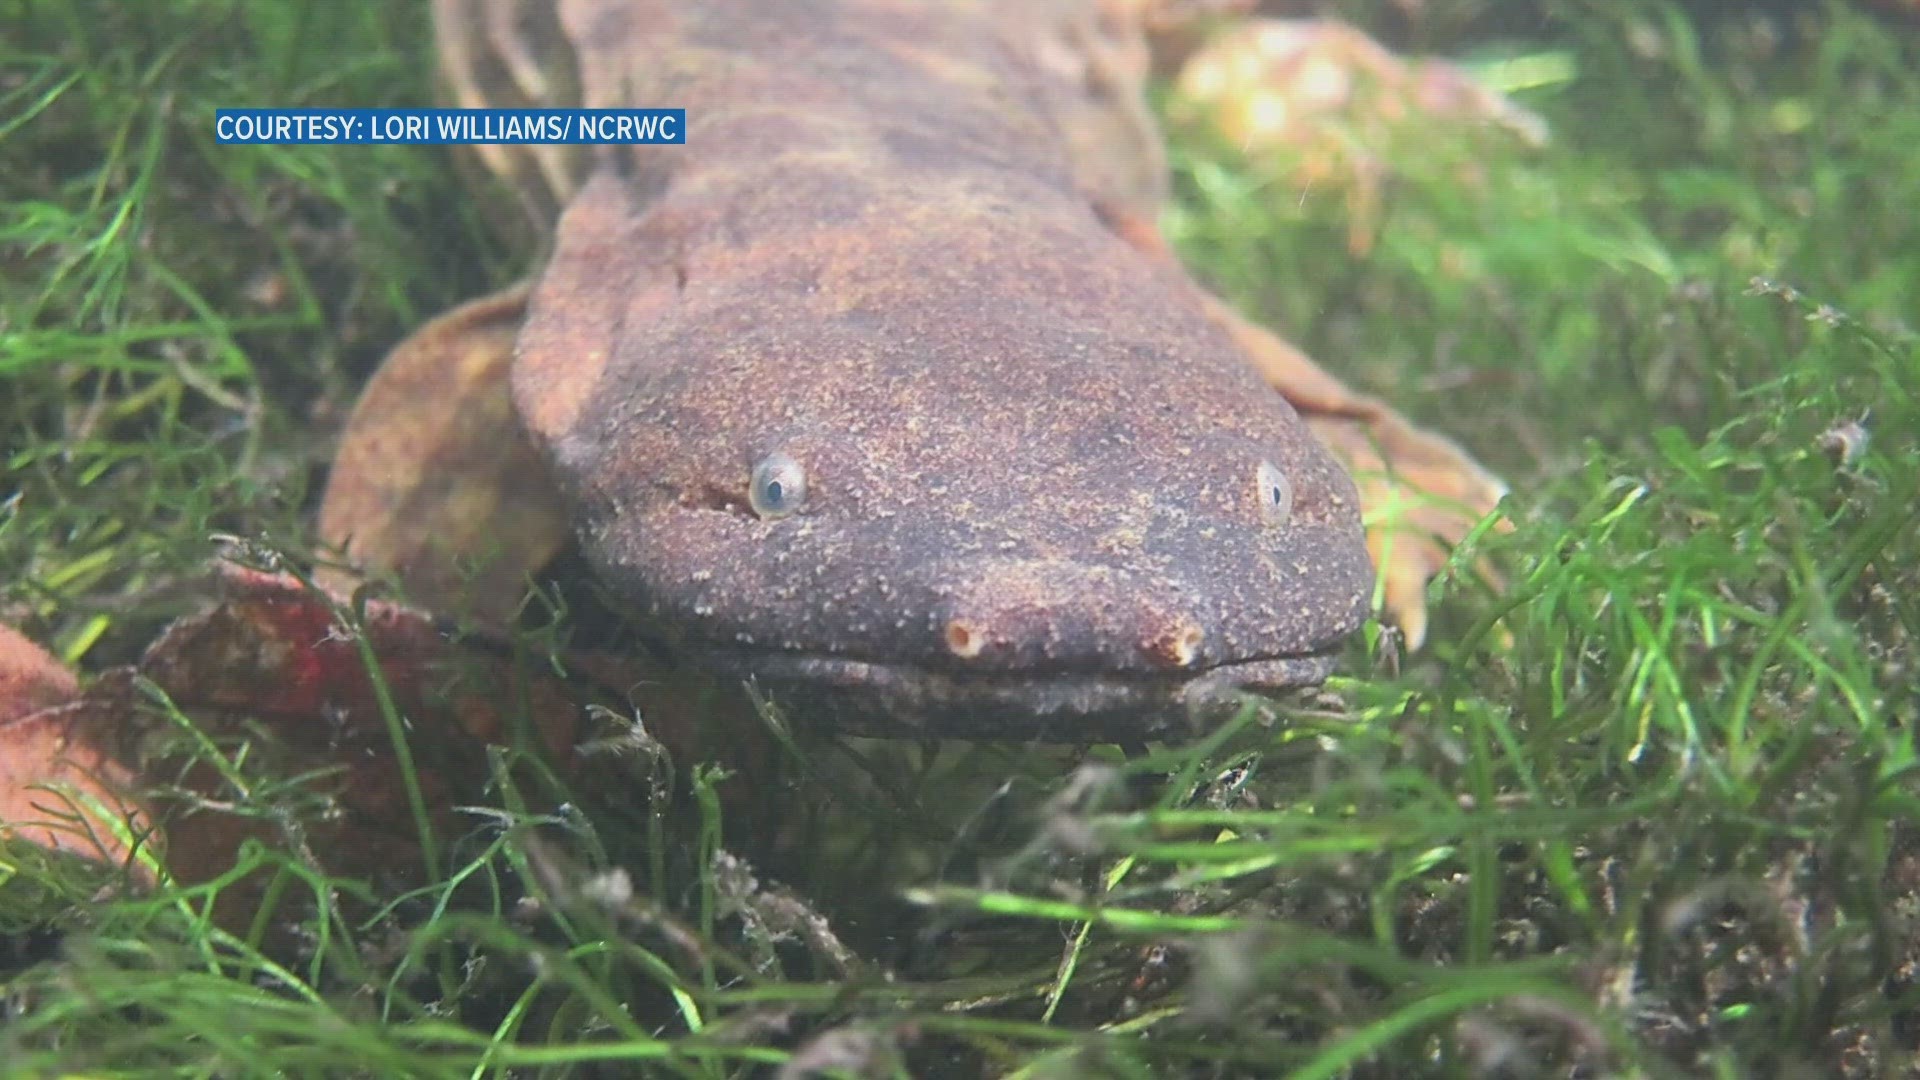 Hellbender salamanders, often found in East Tennessee, see